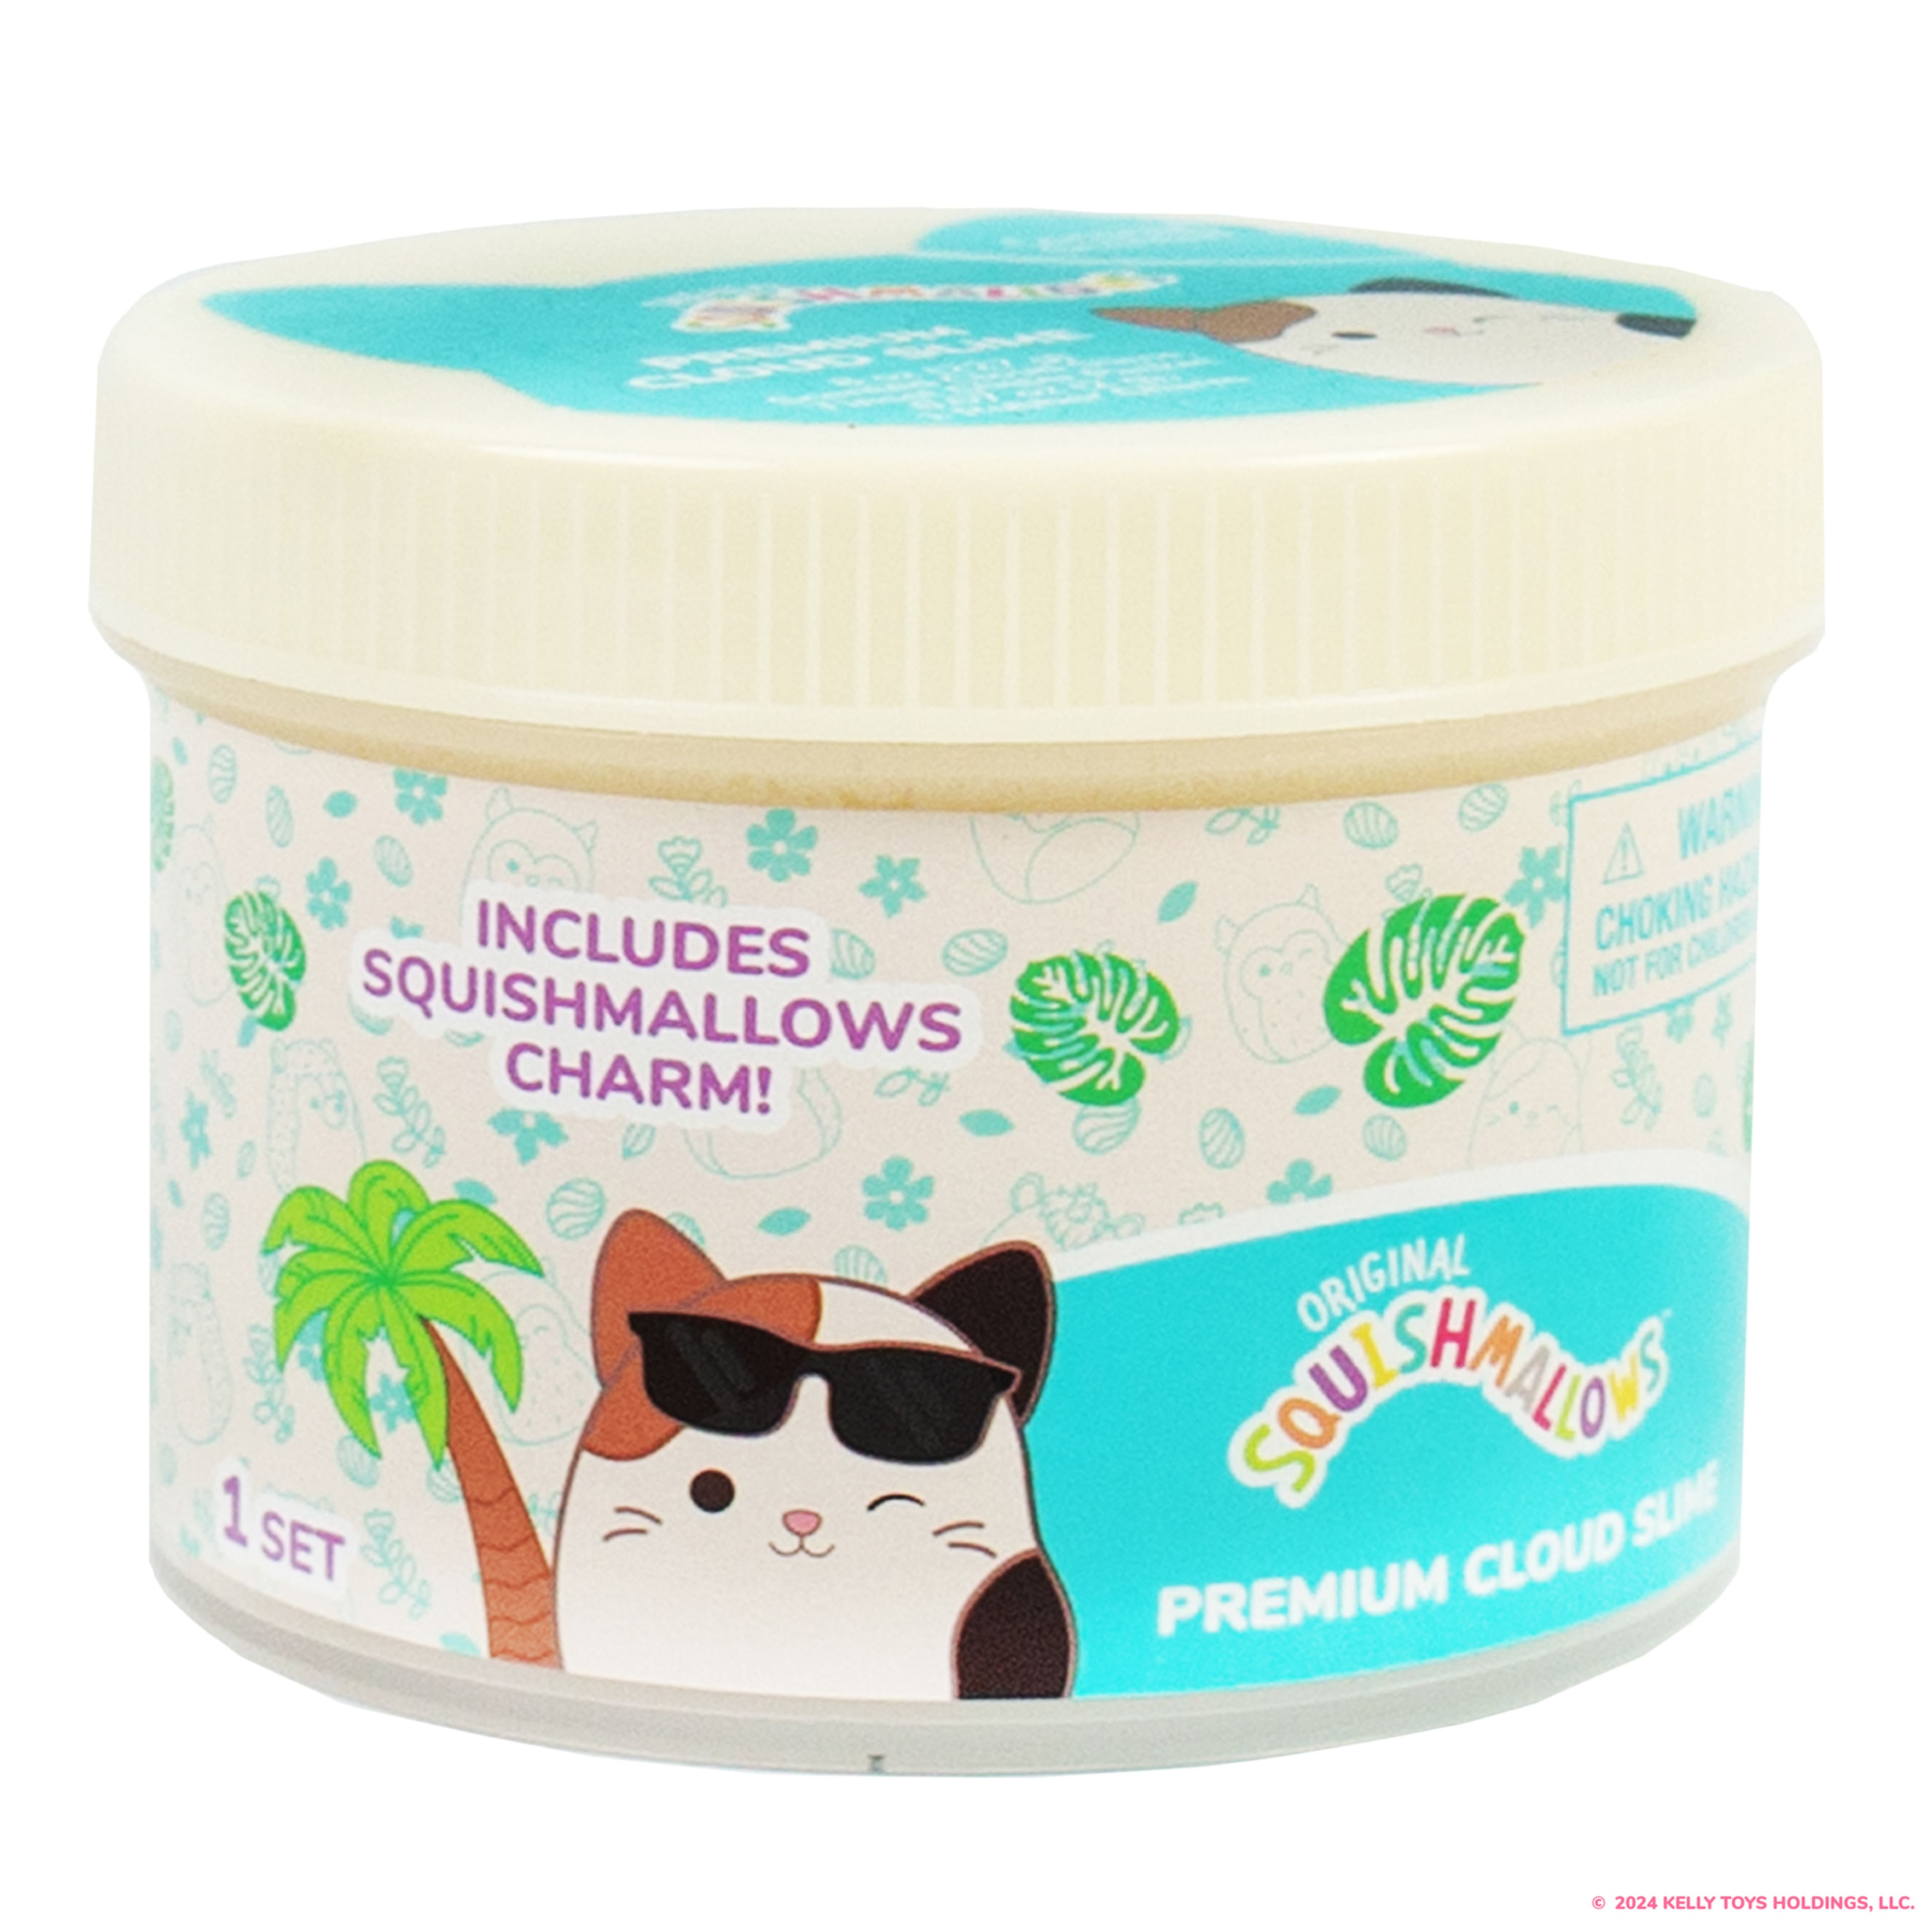 Original Squishmallows&#x2122; Cam the Cat Premium Cloud Slime, Coconut Scented